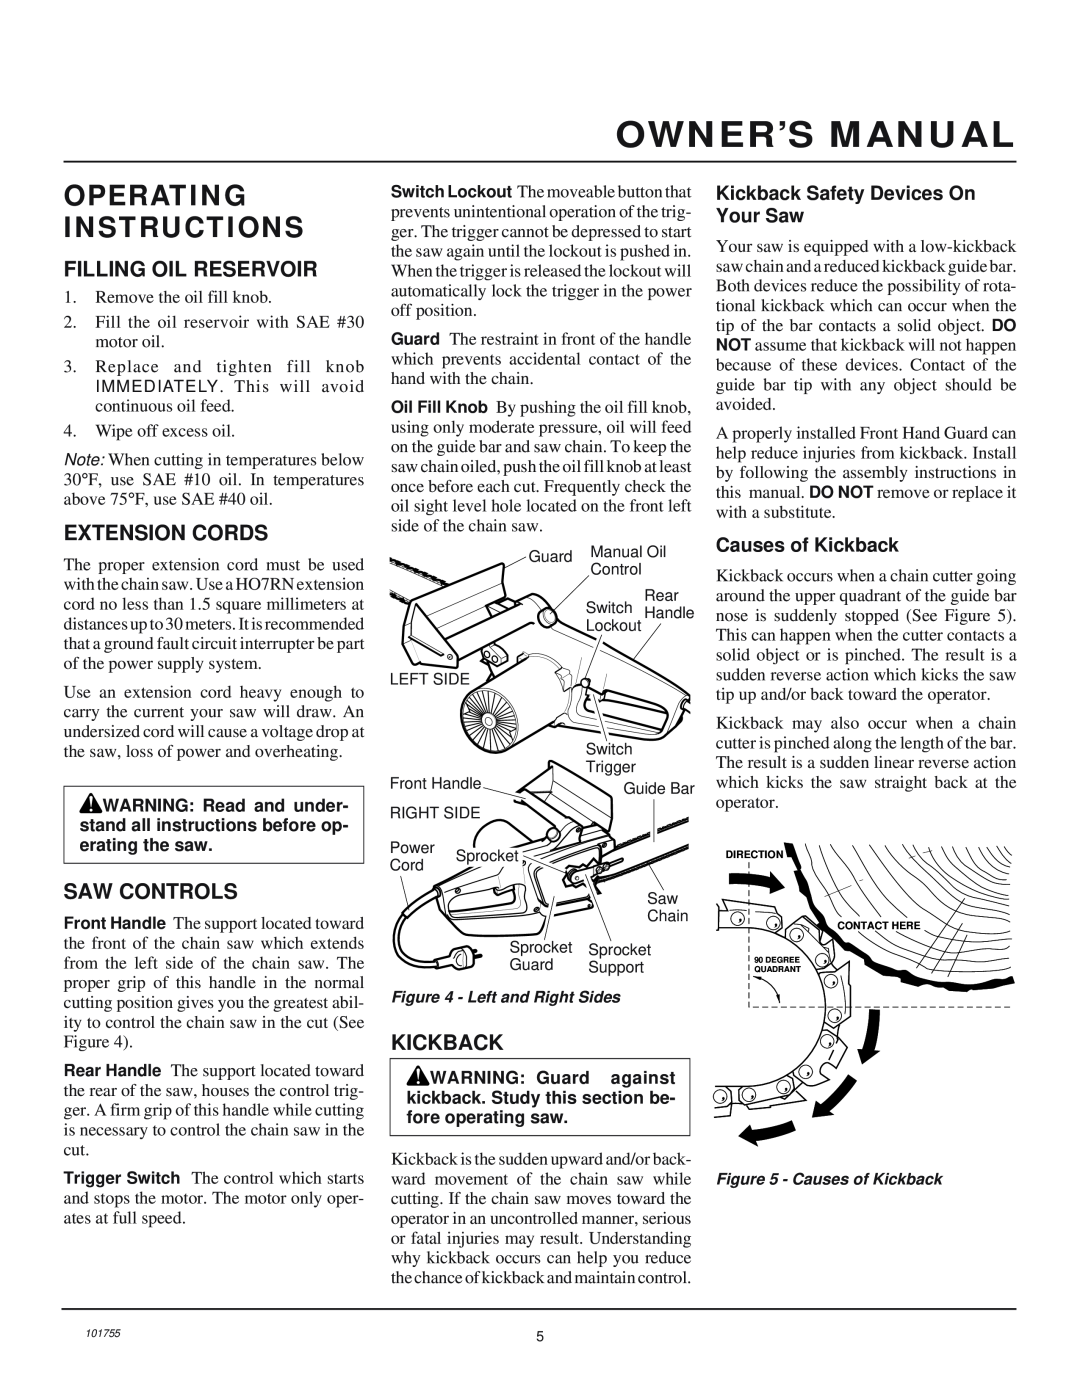 Remington Power Tools EL-3 Operating Instructions, Filling Oil Reservoir, Extension Cords, Saw Controls, Kickback 